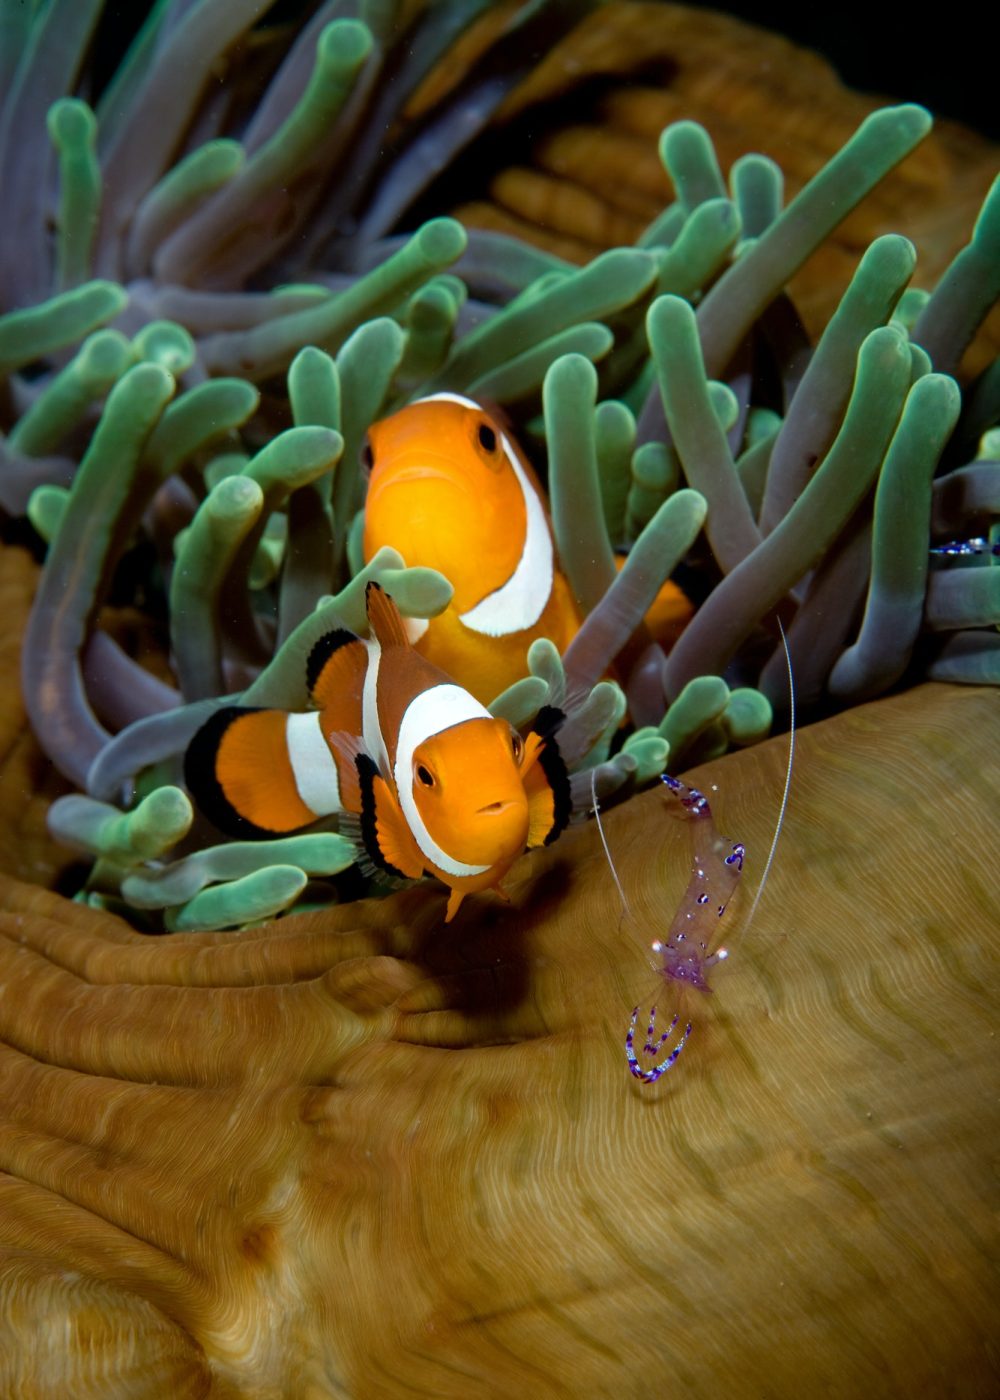 anemonefish-in-anemone-.jpg